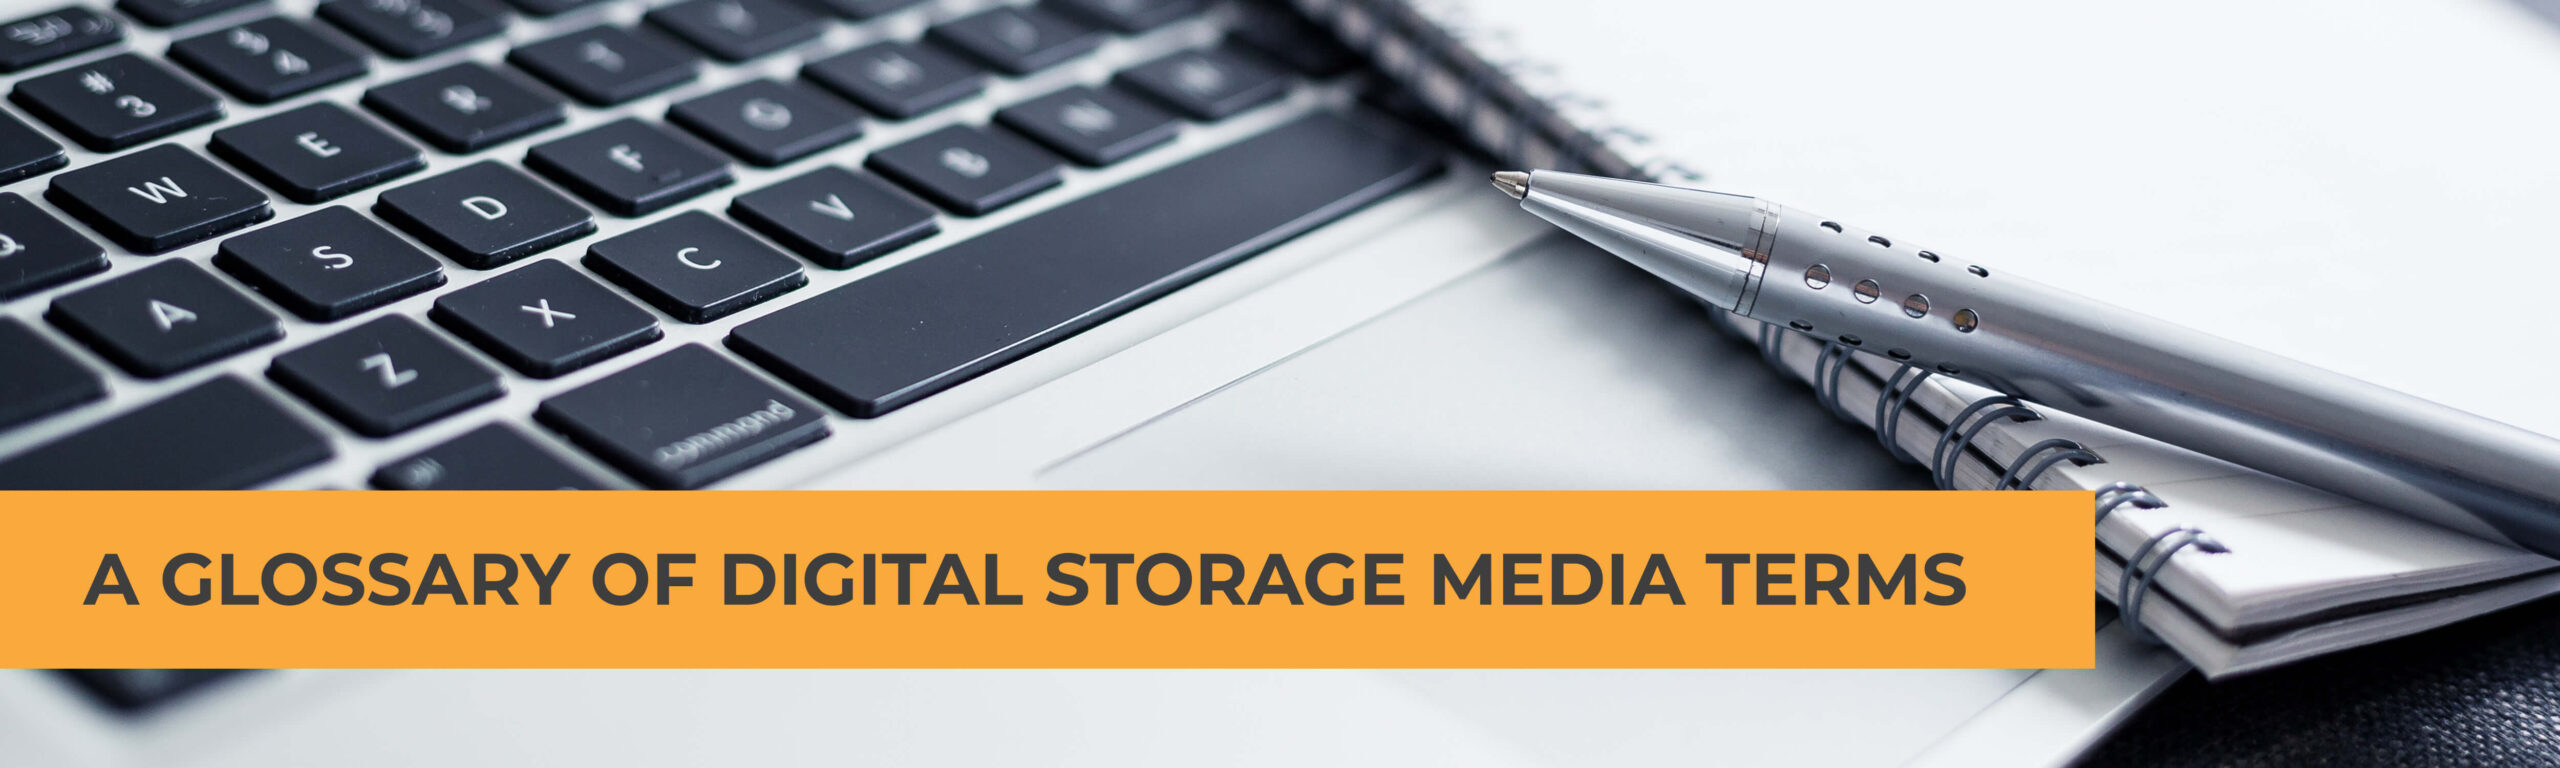 A Glossary of Digital Storage Media Terms